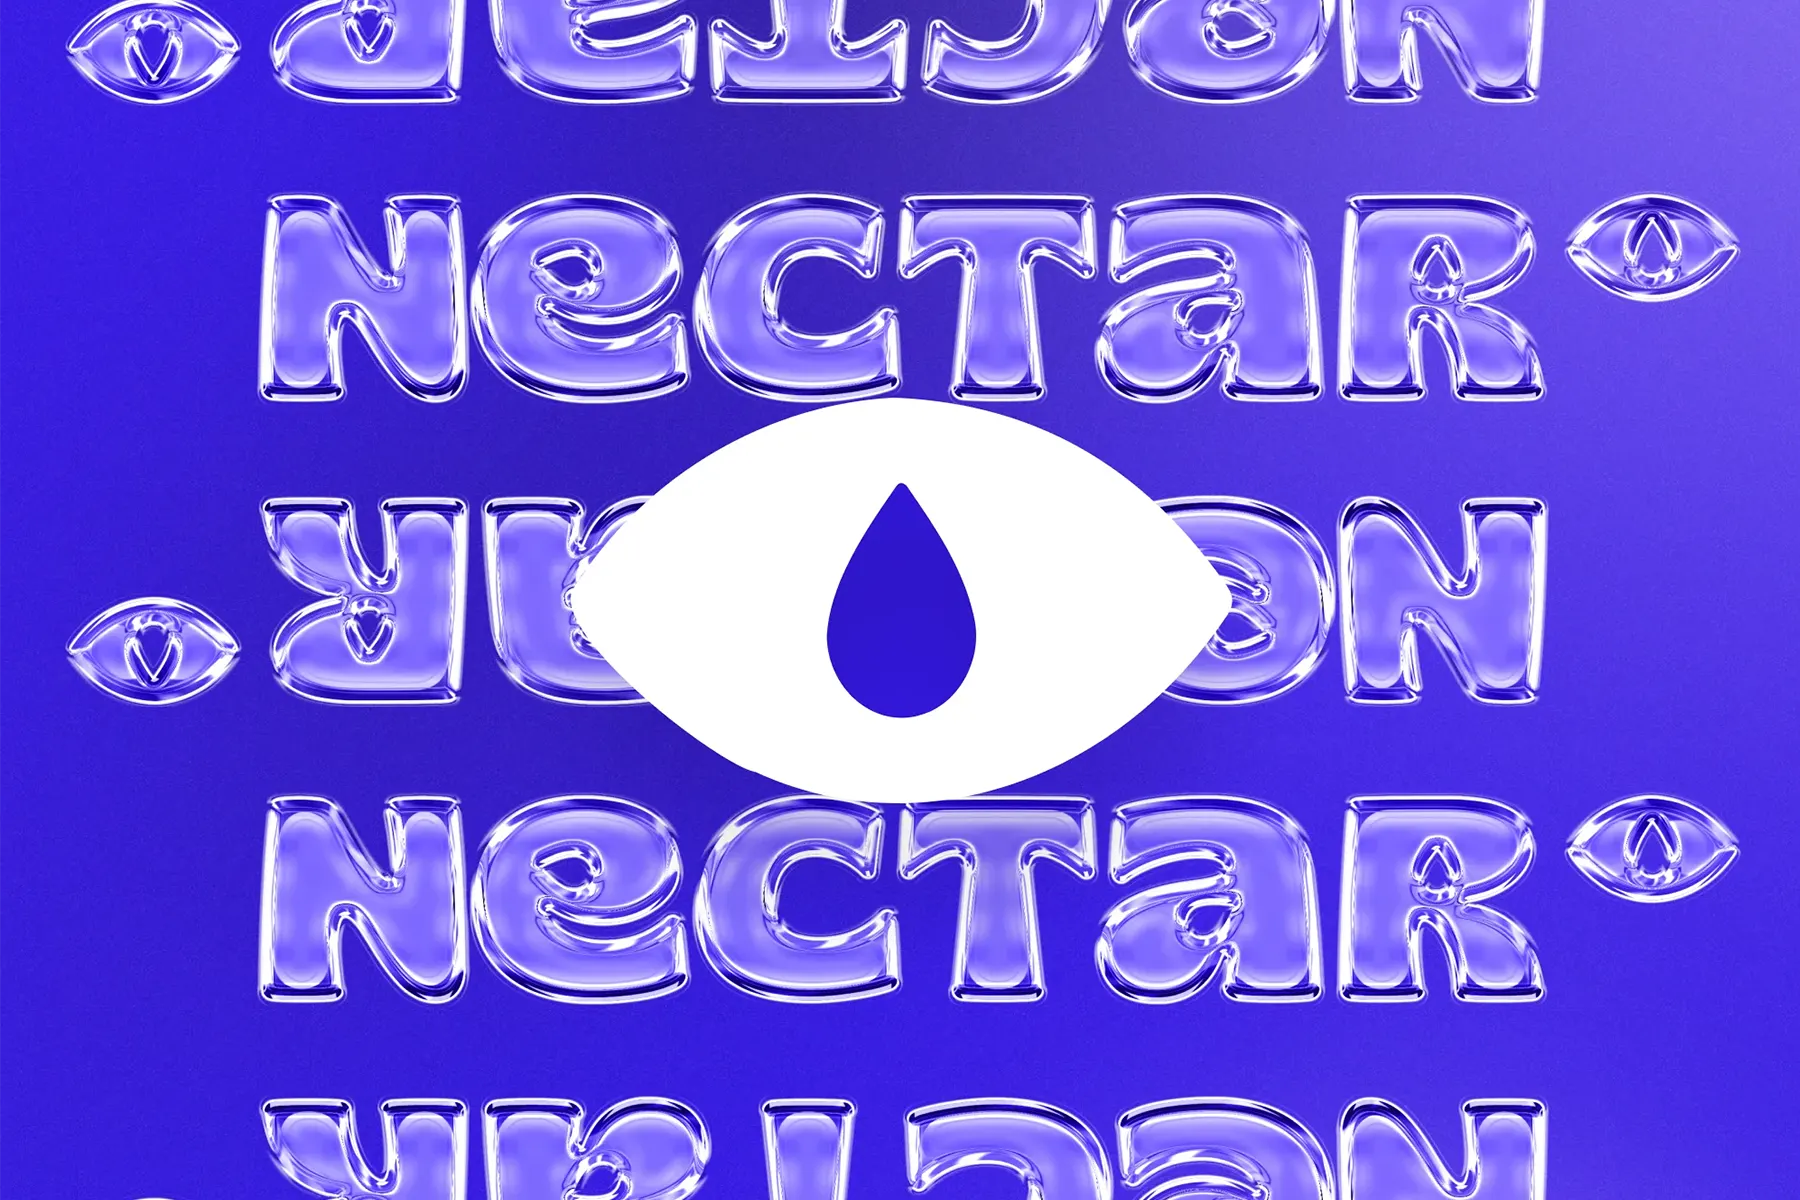 Poster avec le symbole de l'oeil Nectar en premier plan et le logo en effet 2D glass en arrière-plan